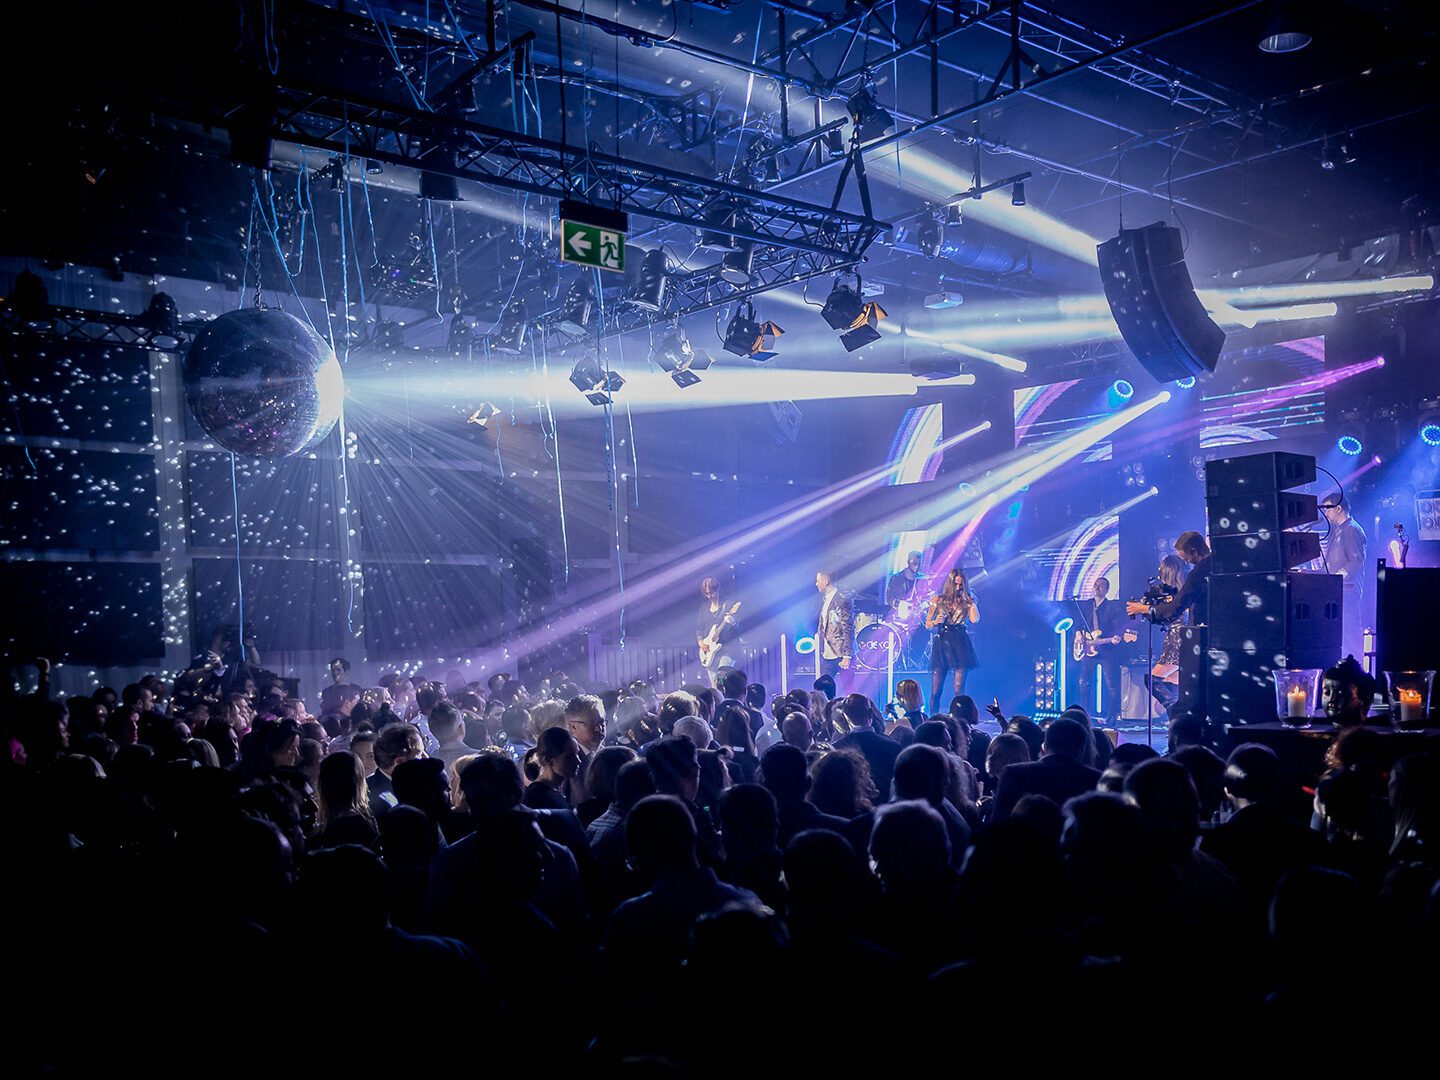 Ein Foto vom BIG BANG Festival während eines Konzerts mit Blick auf die Bühne